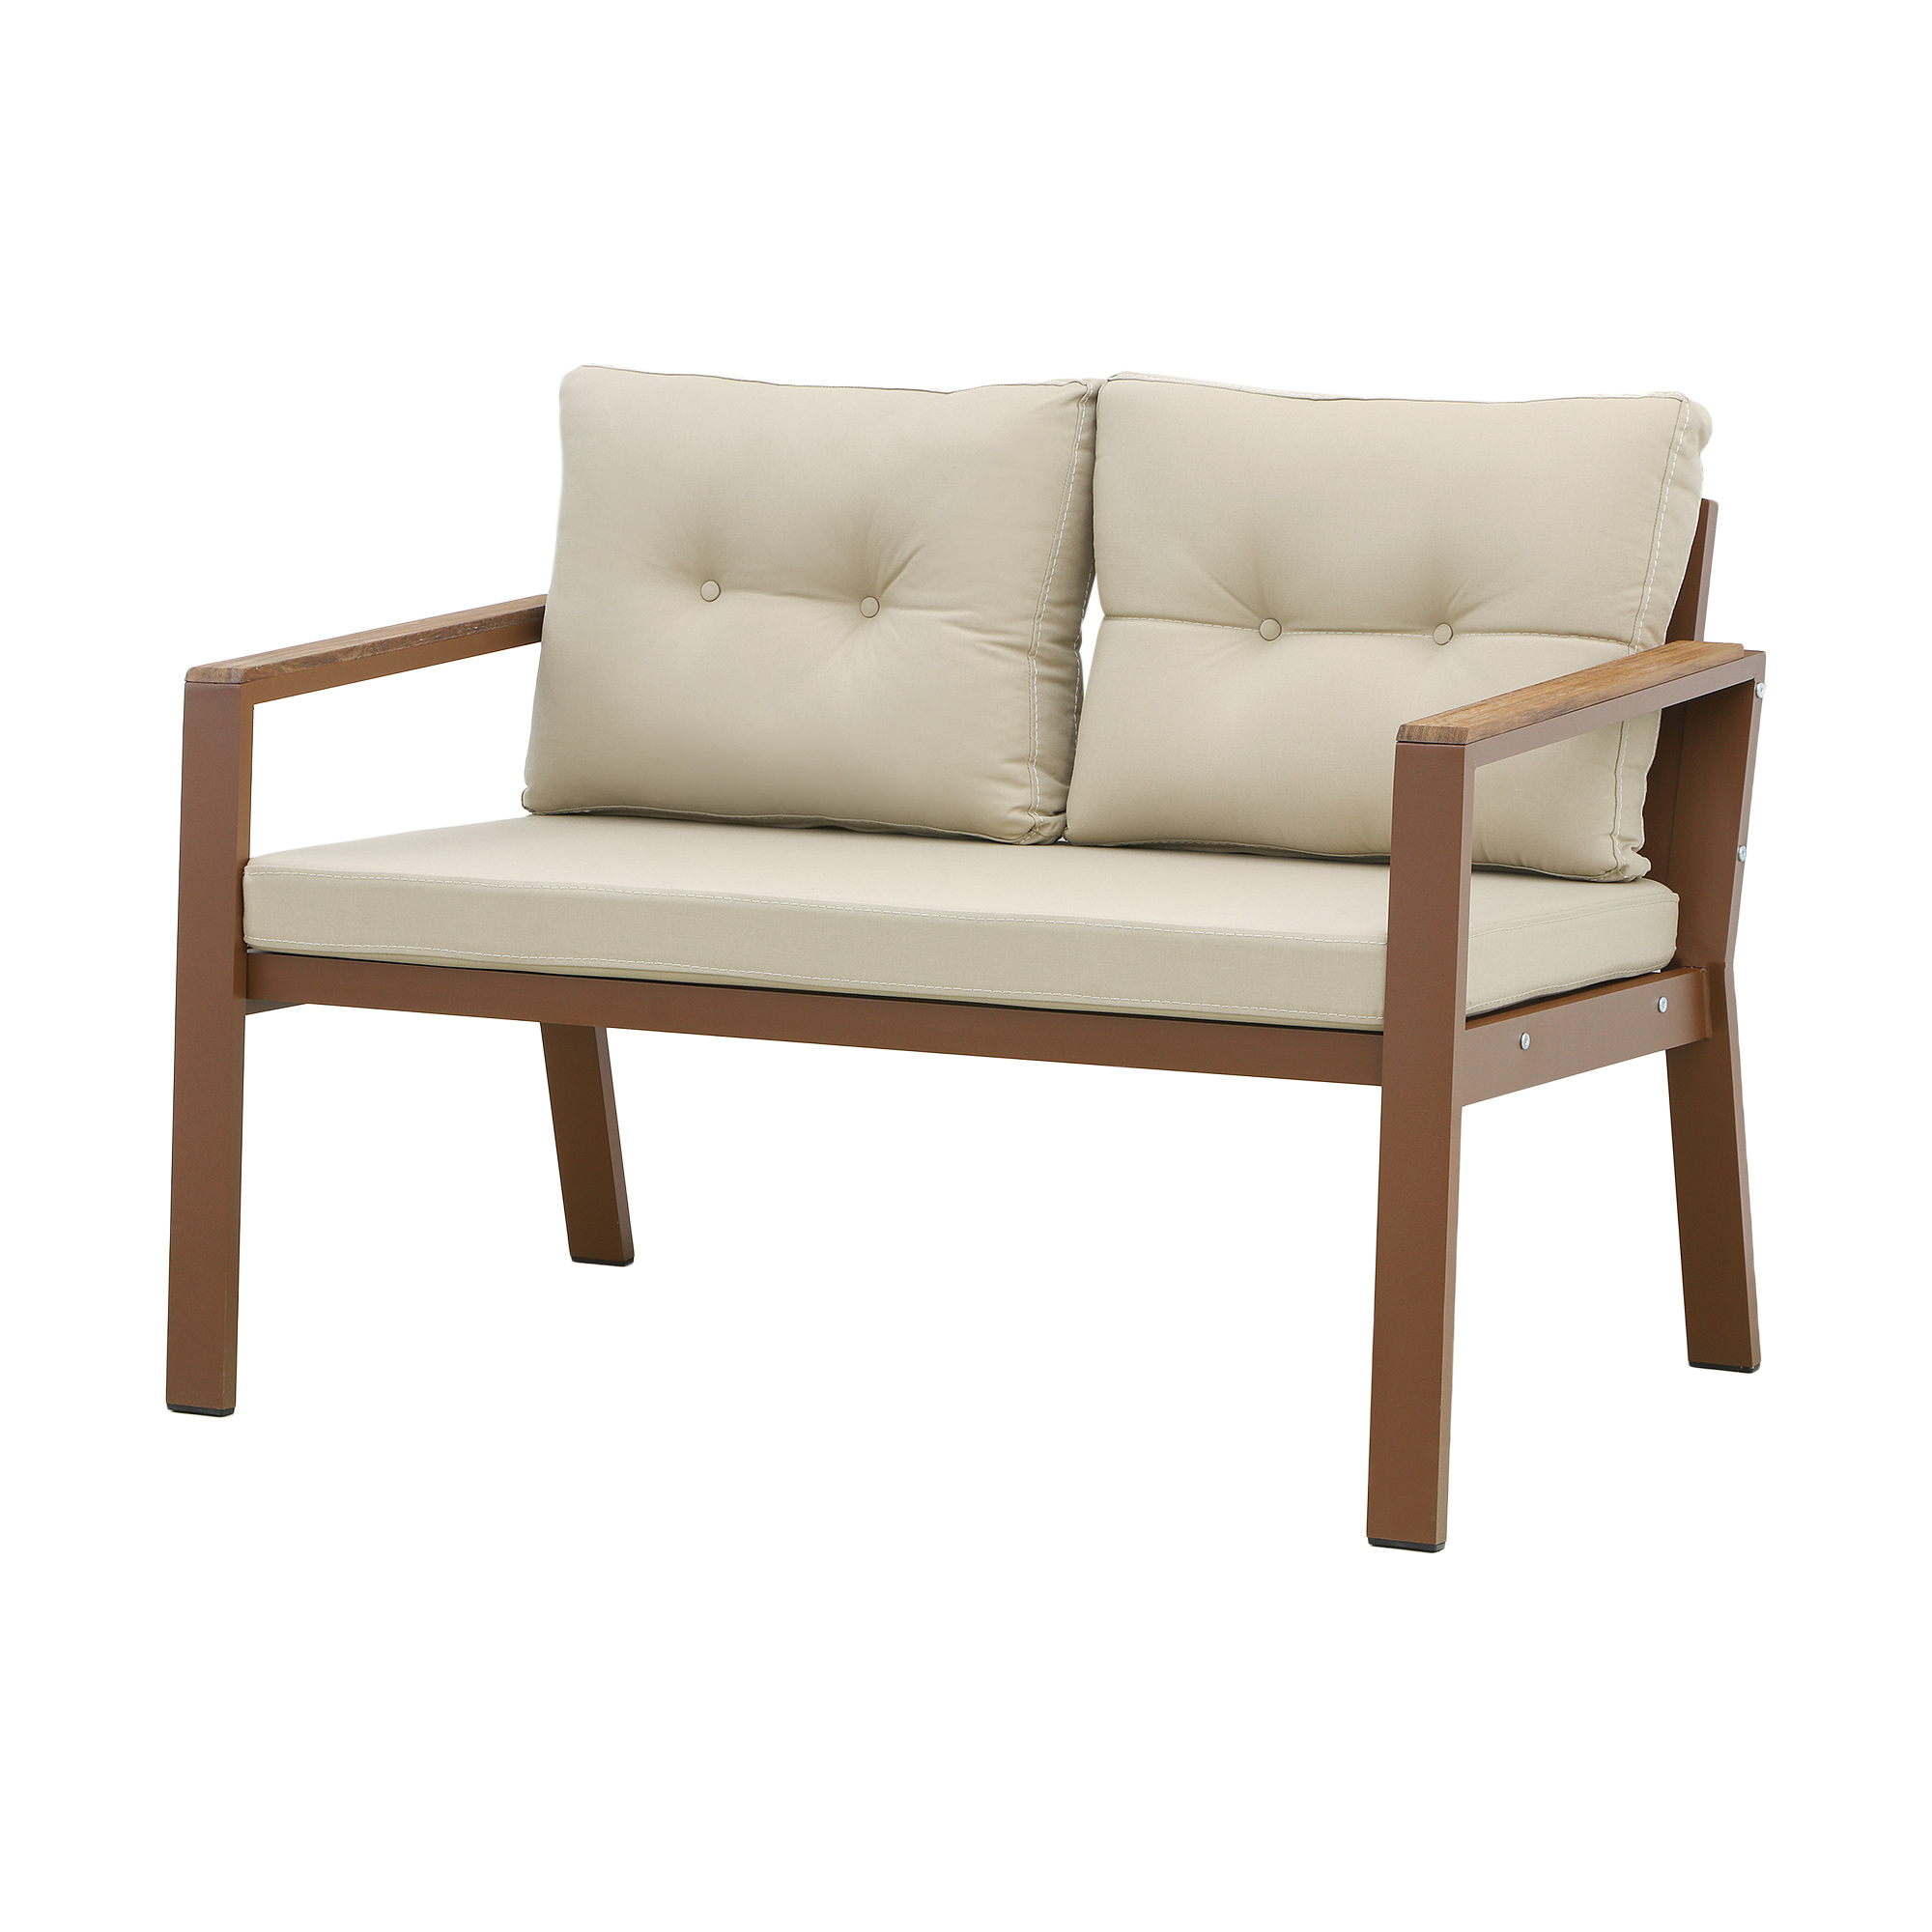 Комплект мебели Erinoz Daphne, цвет коричневый, размер 60x124x75 см - фото 2